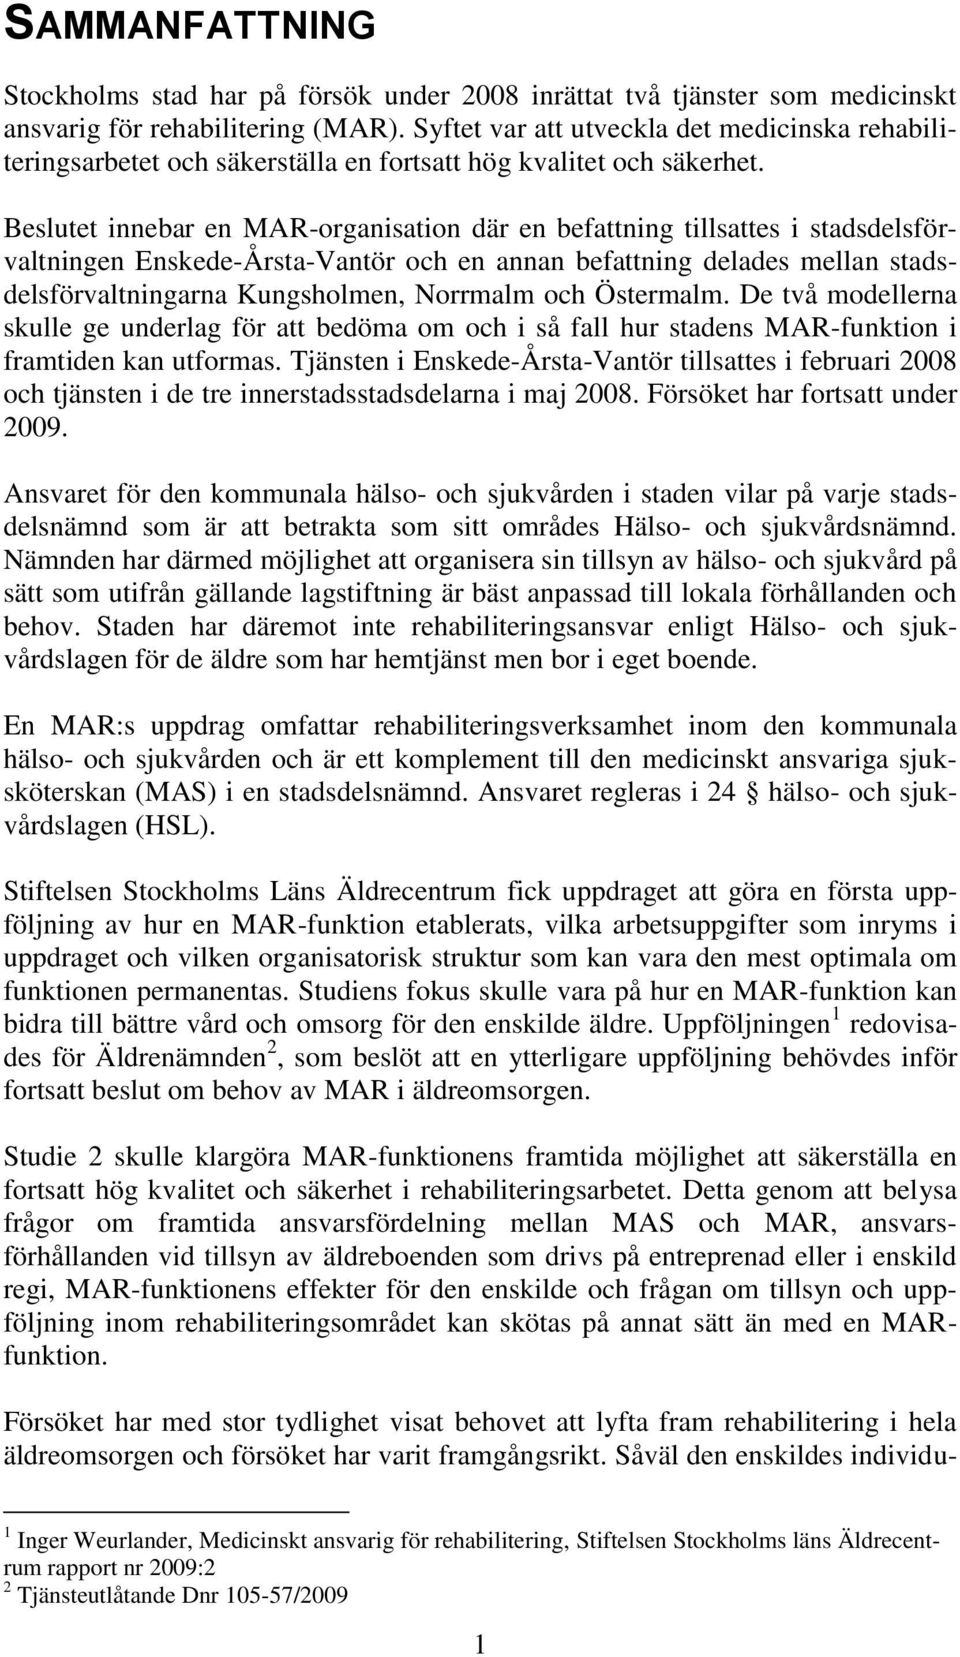 Beslutet innebar en MAR-organisation där en befattning tillsattes i stadsdelsförvaltningen Enskede-Årsta-Vantör och en annan befattning delades mellan stadsdelsförvaltningarna Kungsholmen, Norrmalm